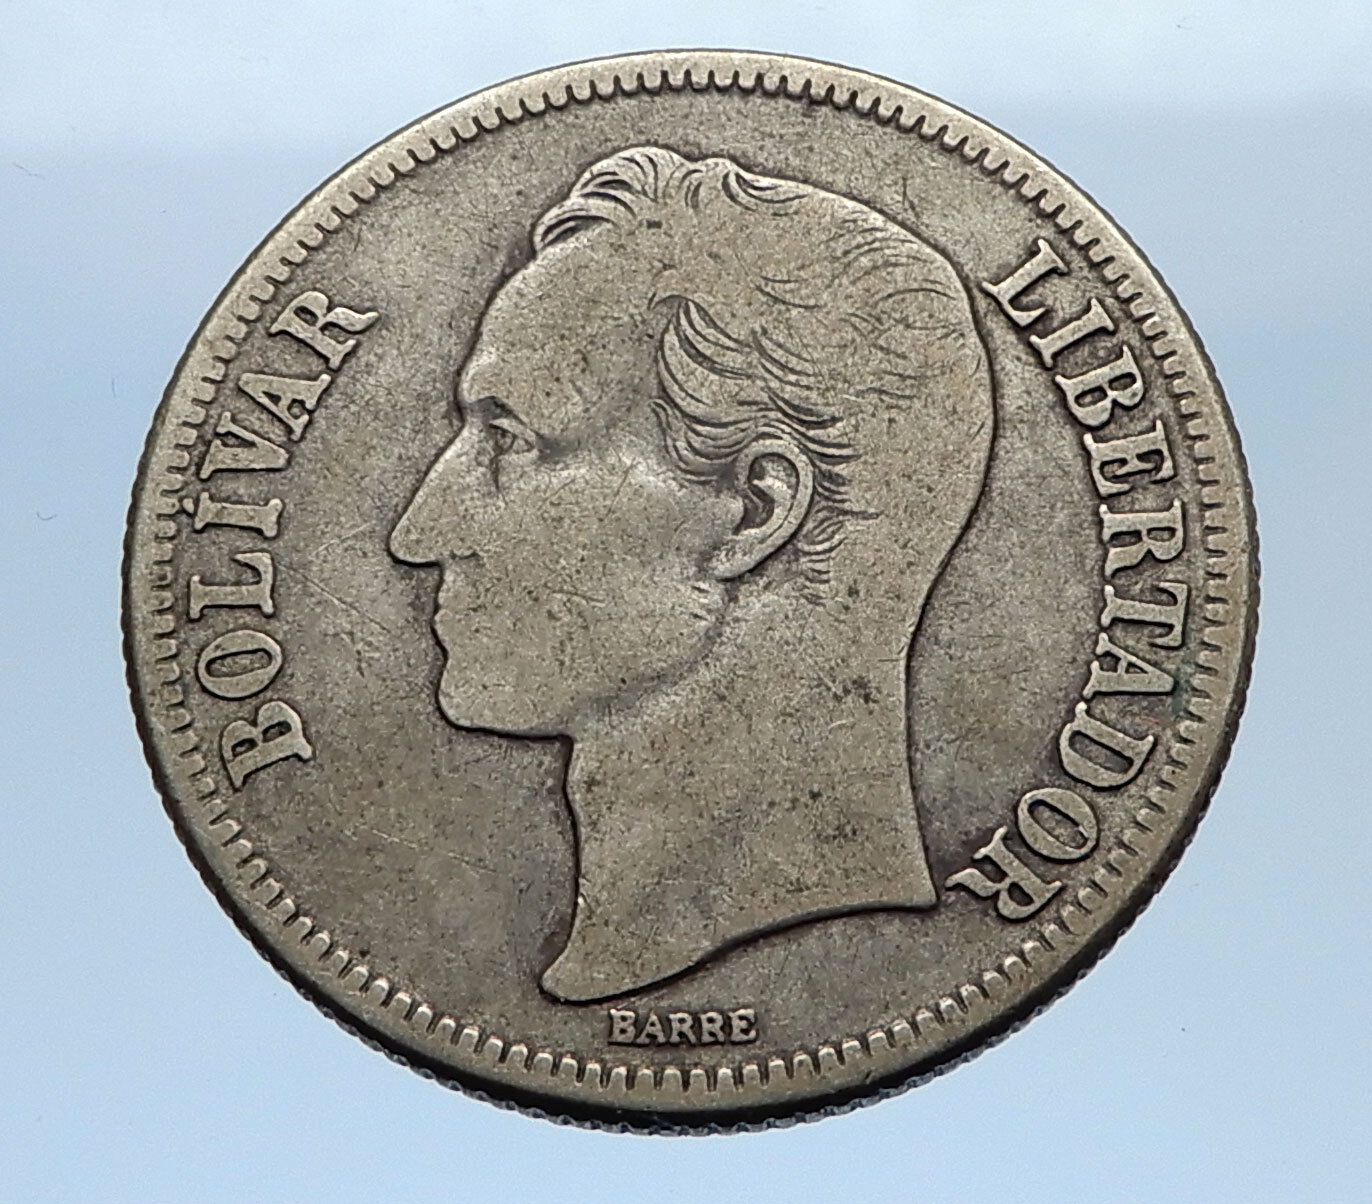 1945 Freemason President Simon Bolivar VENEZUELA Founder Silver Coin i69343